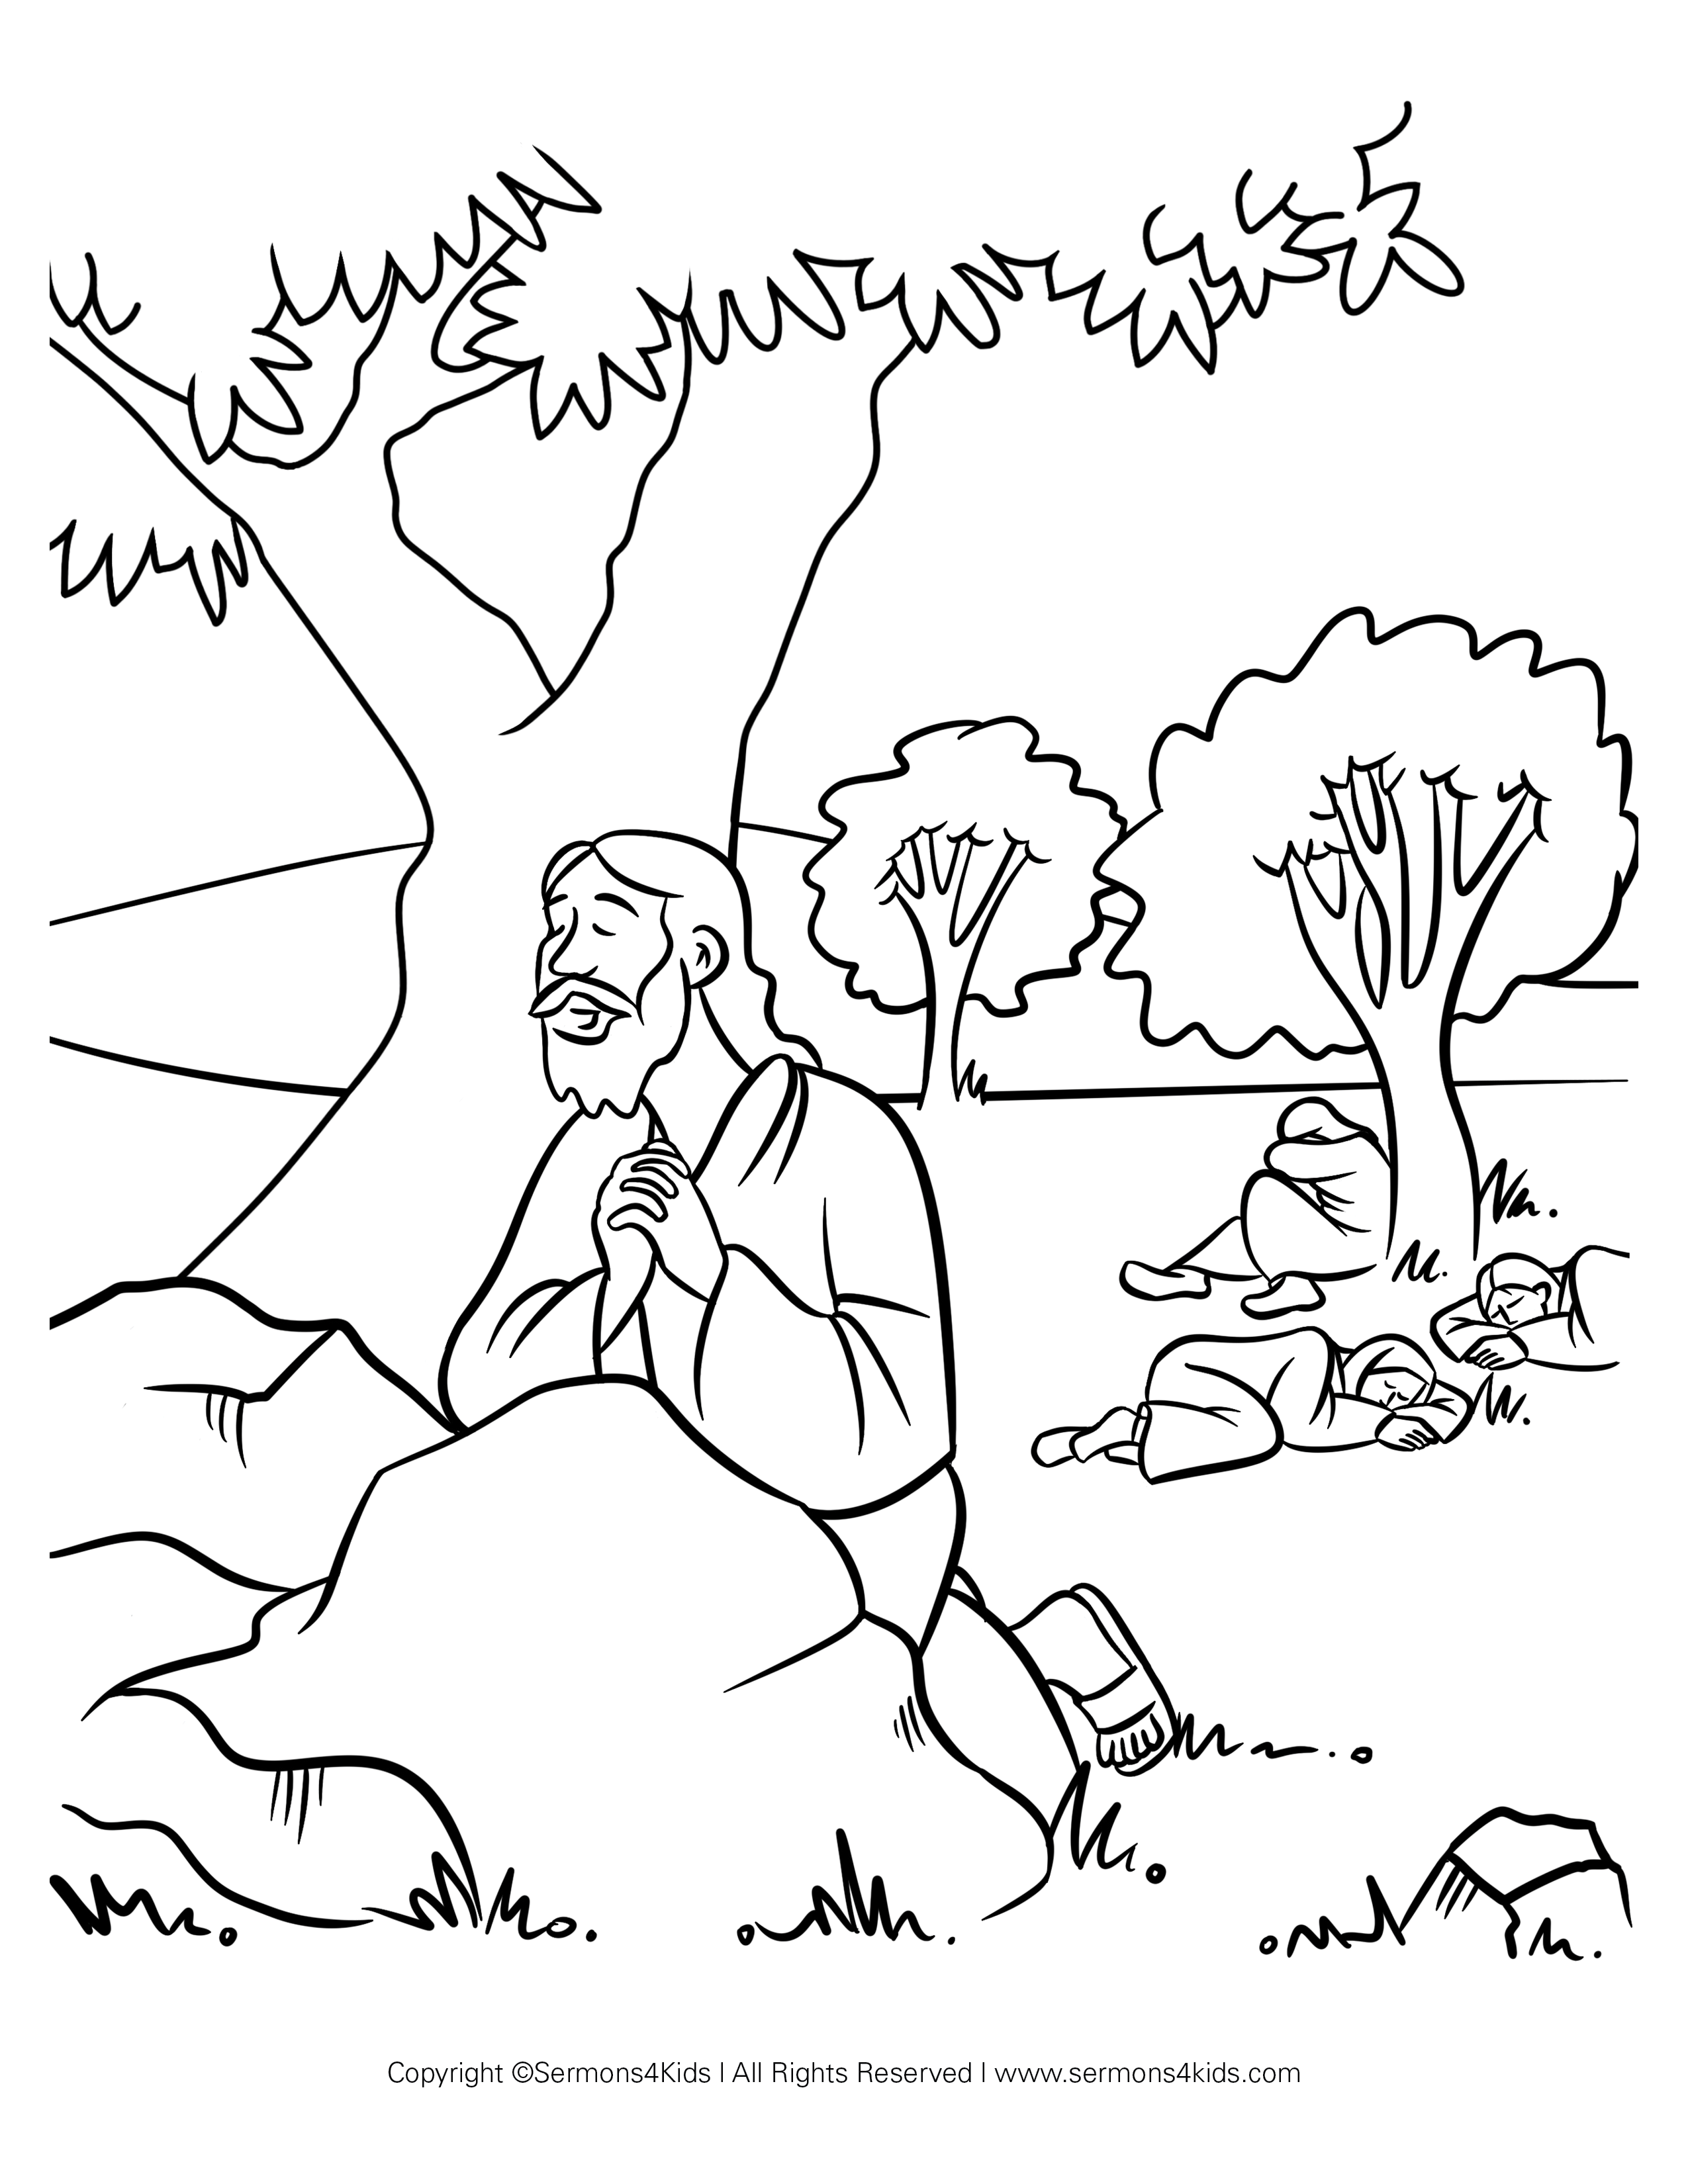 Jesus Praying in the Garden